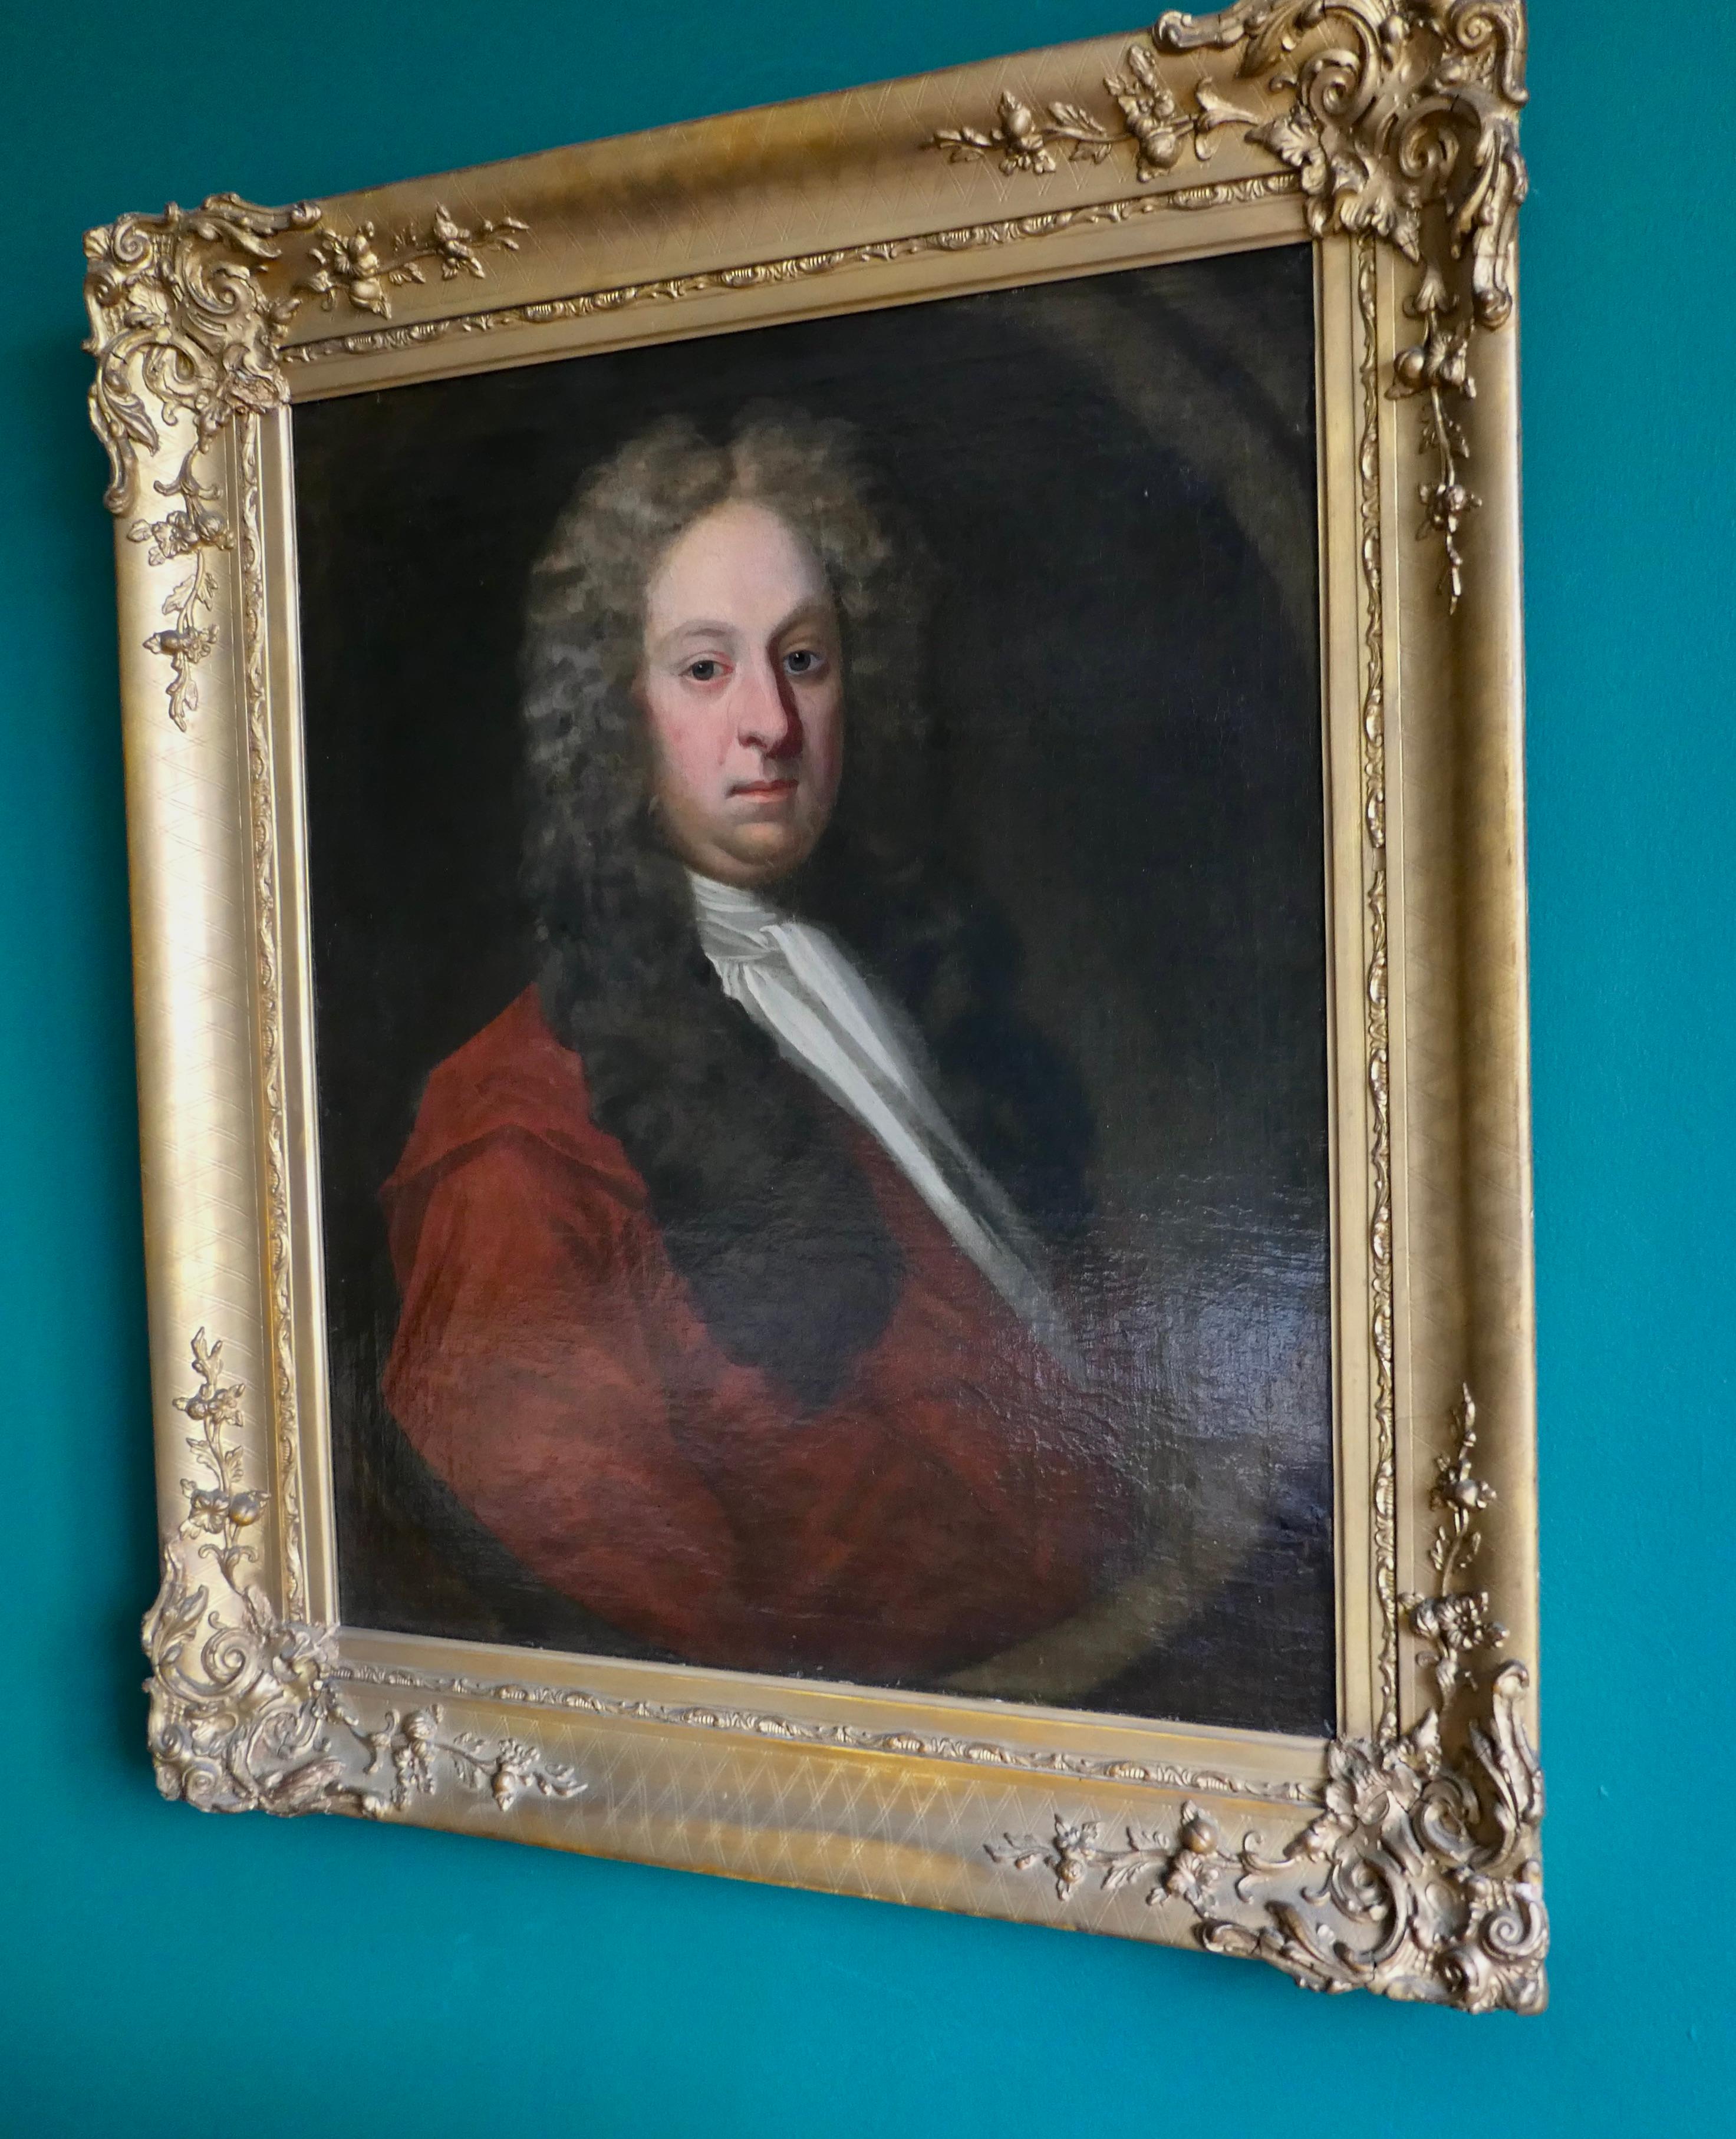 Frühes 18. Jahrhundert Porträt eines Gentleman, William Woodhouse von Rearsby Hall

Hervorragend gemalt, Öl auf Leinwand in schönem Zustand, das Porträt zeigt einen Herrn mit großer Perücke und leicht nach rechts gedrehtem Kopf, er trägt ein weißes